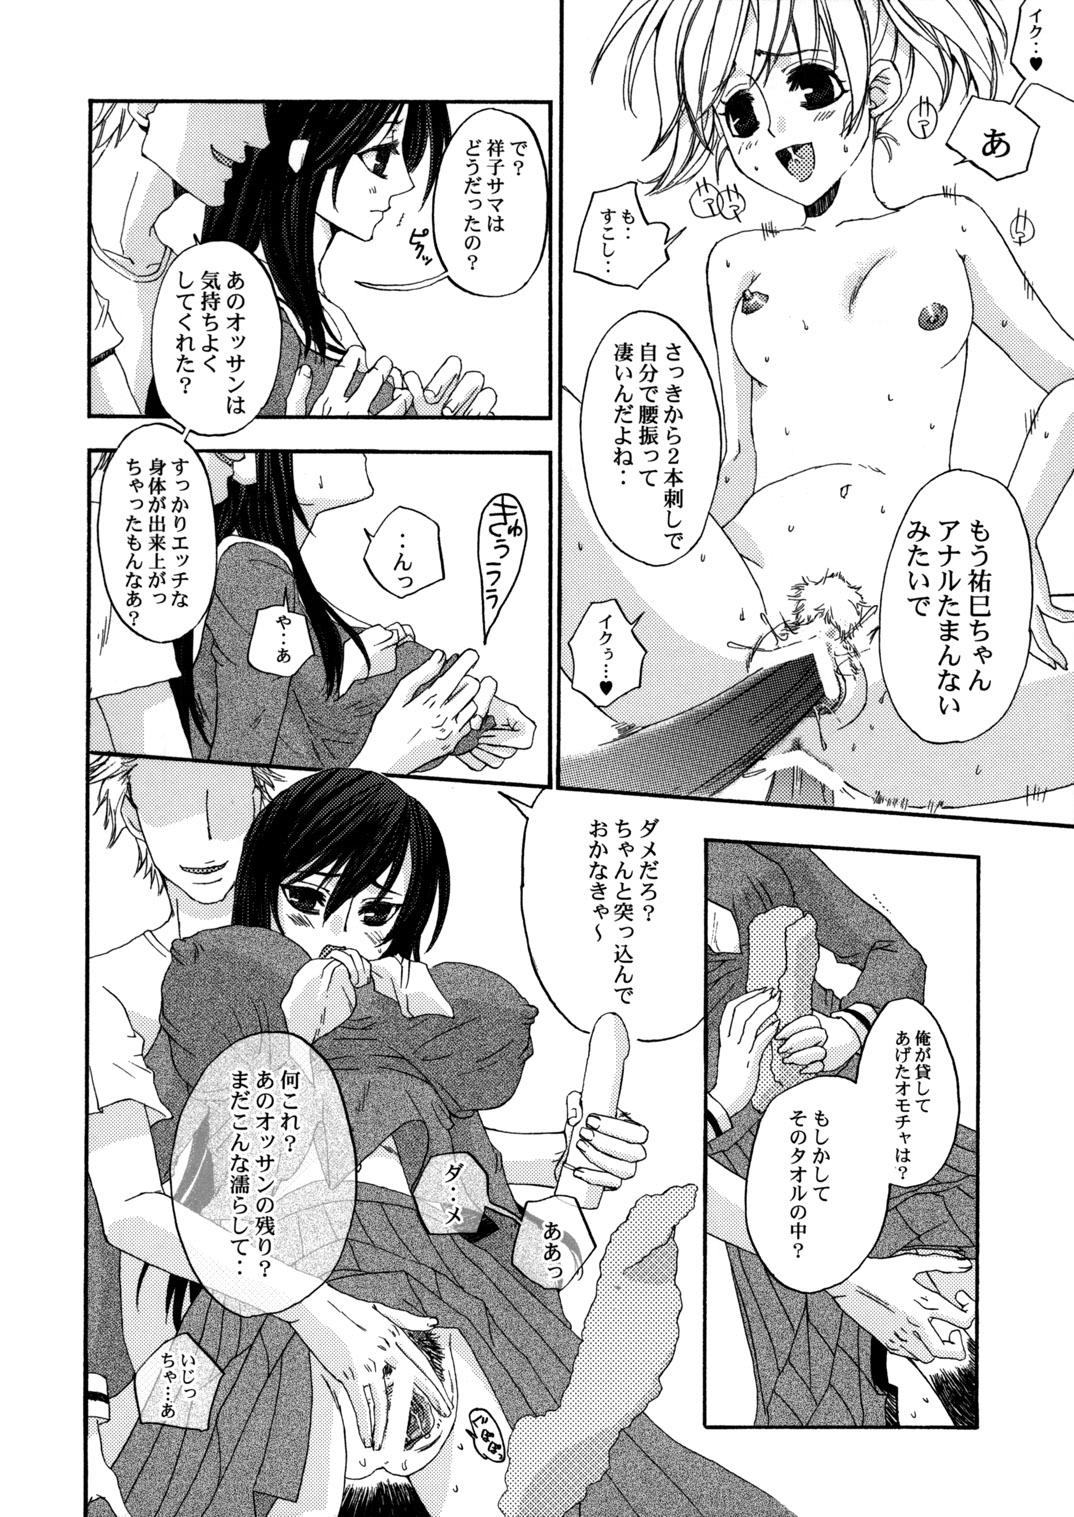 Perfect Body Porn Himitsu no Hanazono 3 | Secret the garden of a flower 3 - Maria sama ga miteru Straight - Page 5